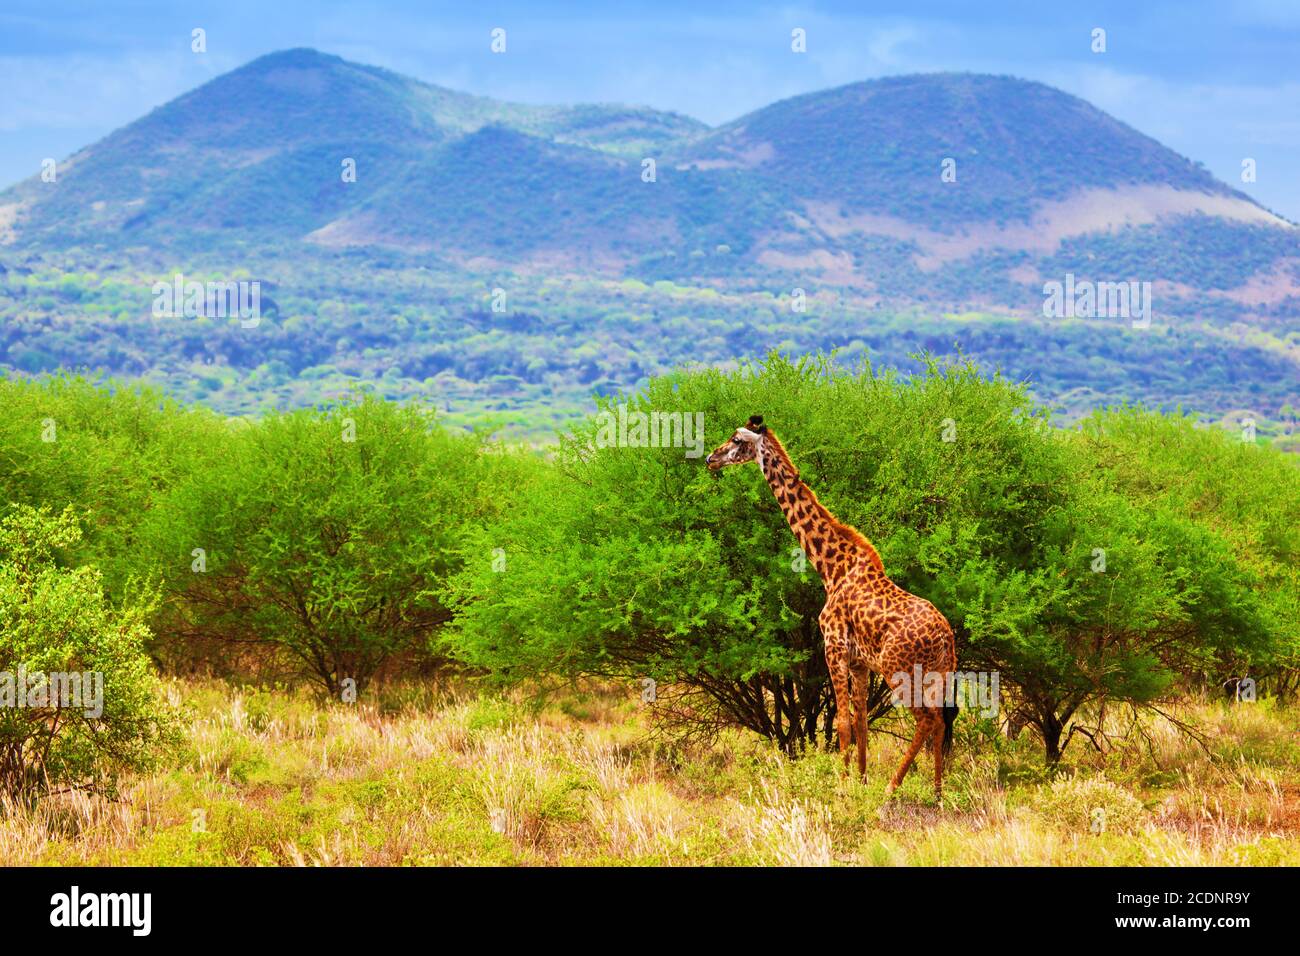 Giraffe on savanna. Safari in Tsavo West, Kenya, Africa Stock Photo